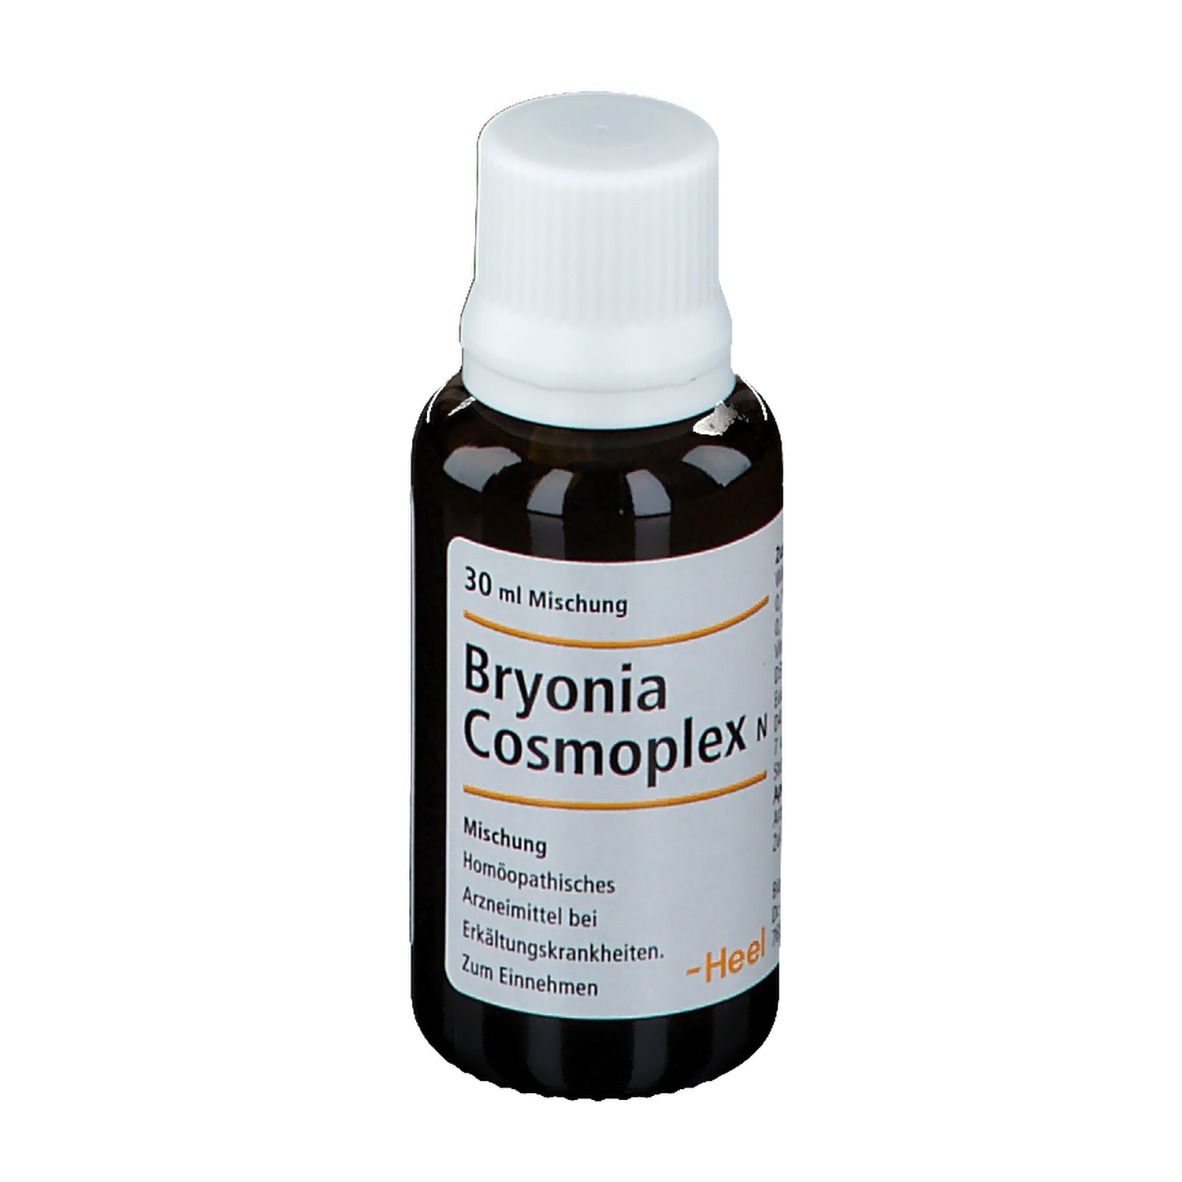 Bryonia Cosmoplex® N